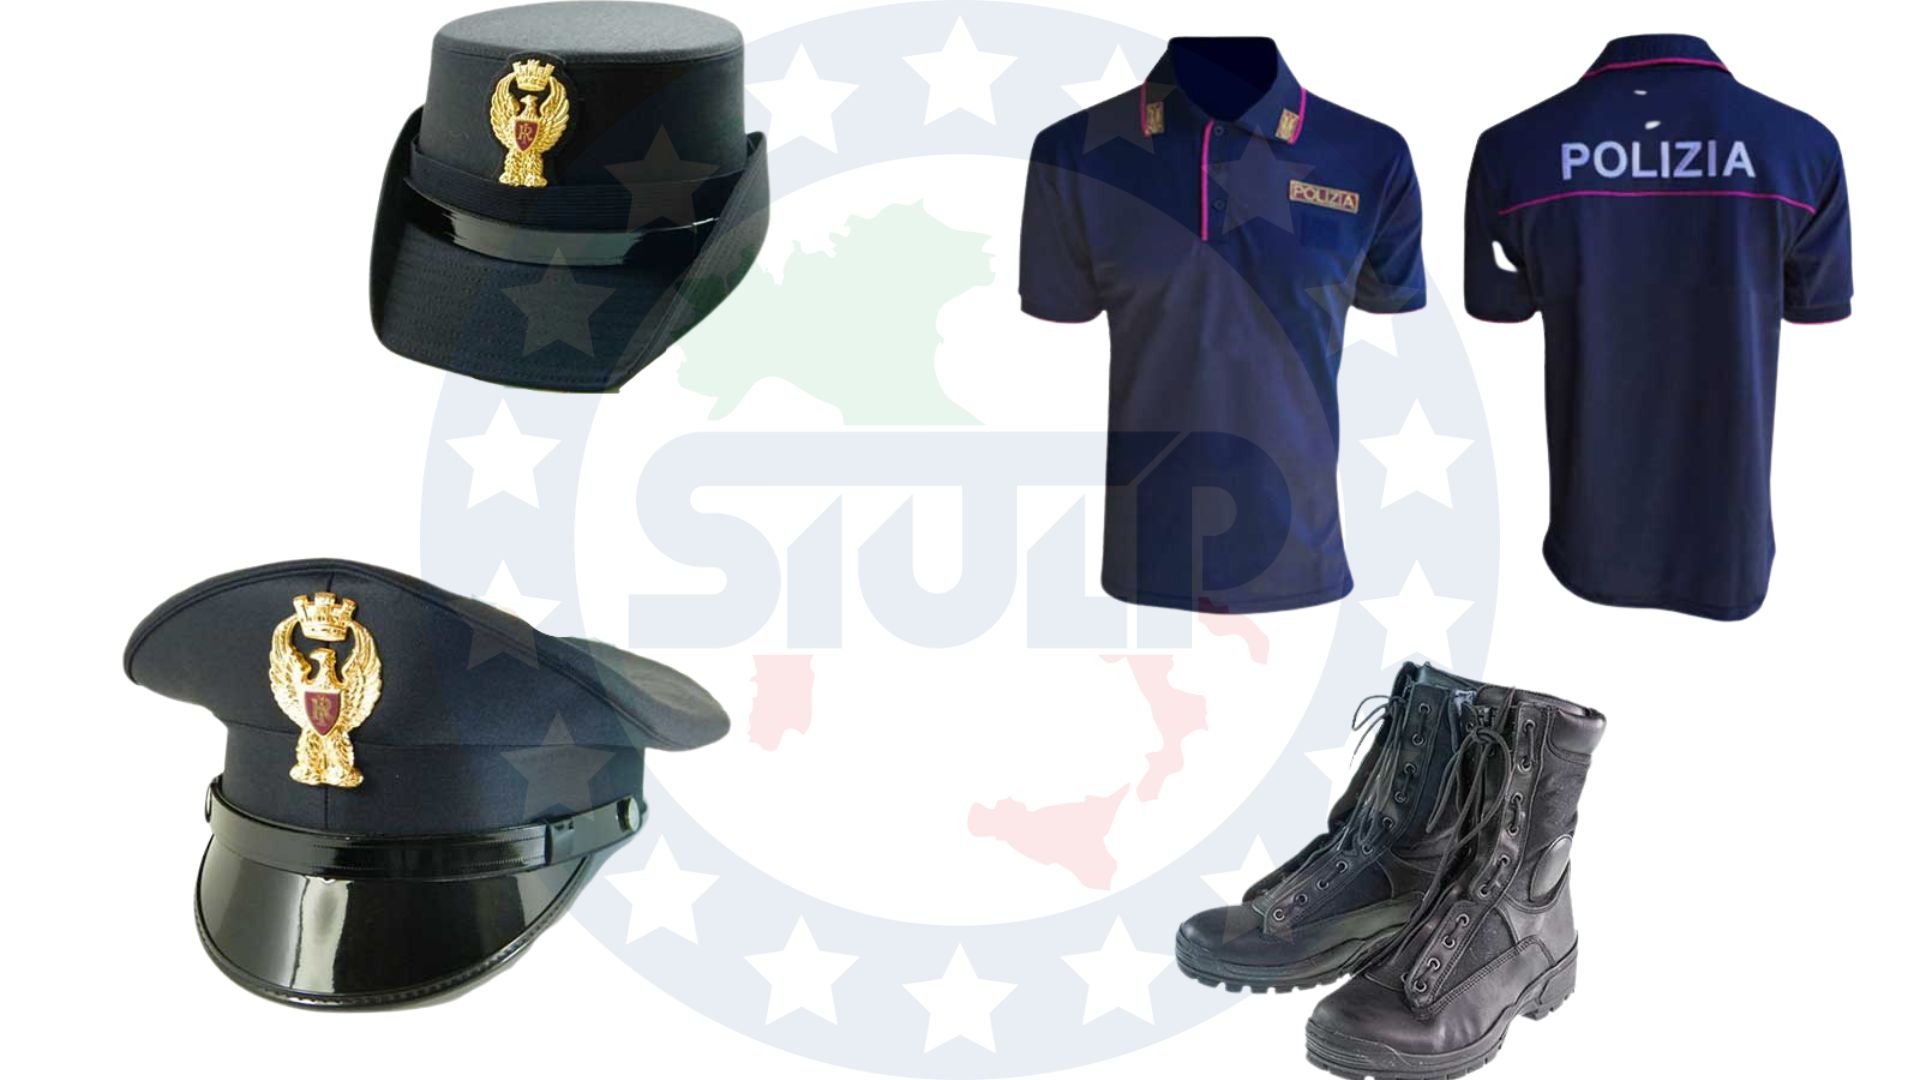 Approvvigionamento e distribuzione della divisa operativa in dotazione alla Polizia  di Stato - SIULP